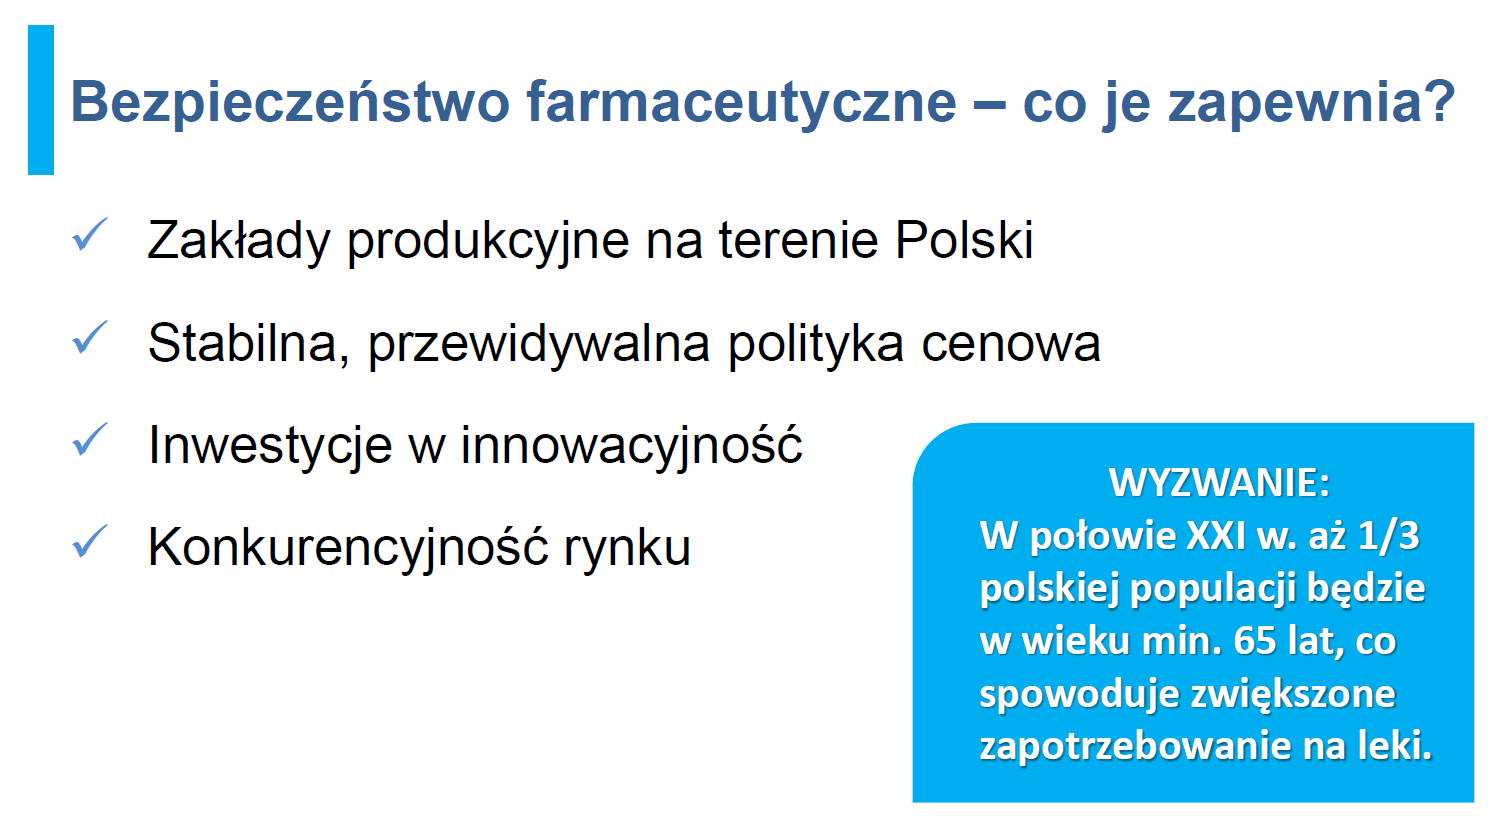 1. Zapewnia bezpieczeństwo lekowe Polaków. Co drugi lek na rynku pochodzi z krajowych fabryk. Lokalne firmy, jako jedyne, utrzymują w produkcji wiele nierentownych leków. 2.